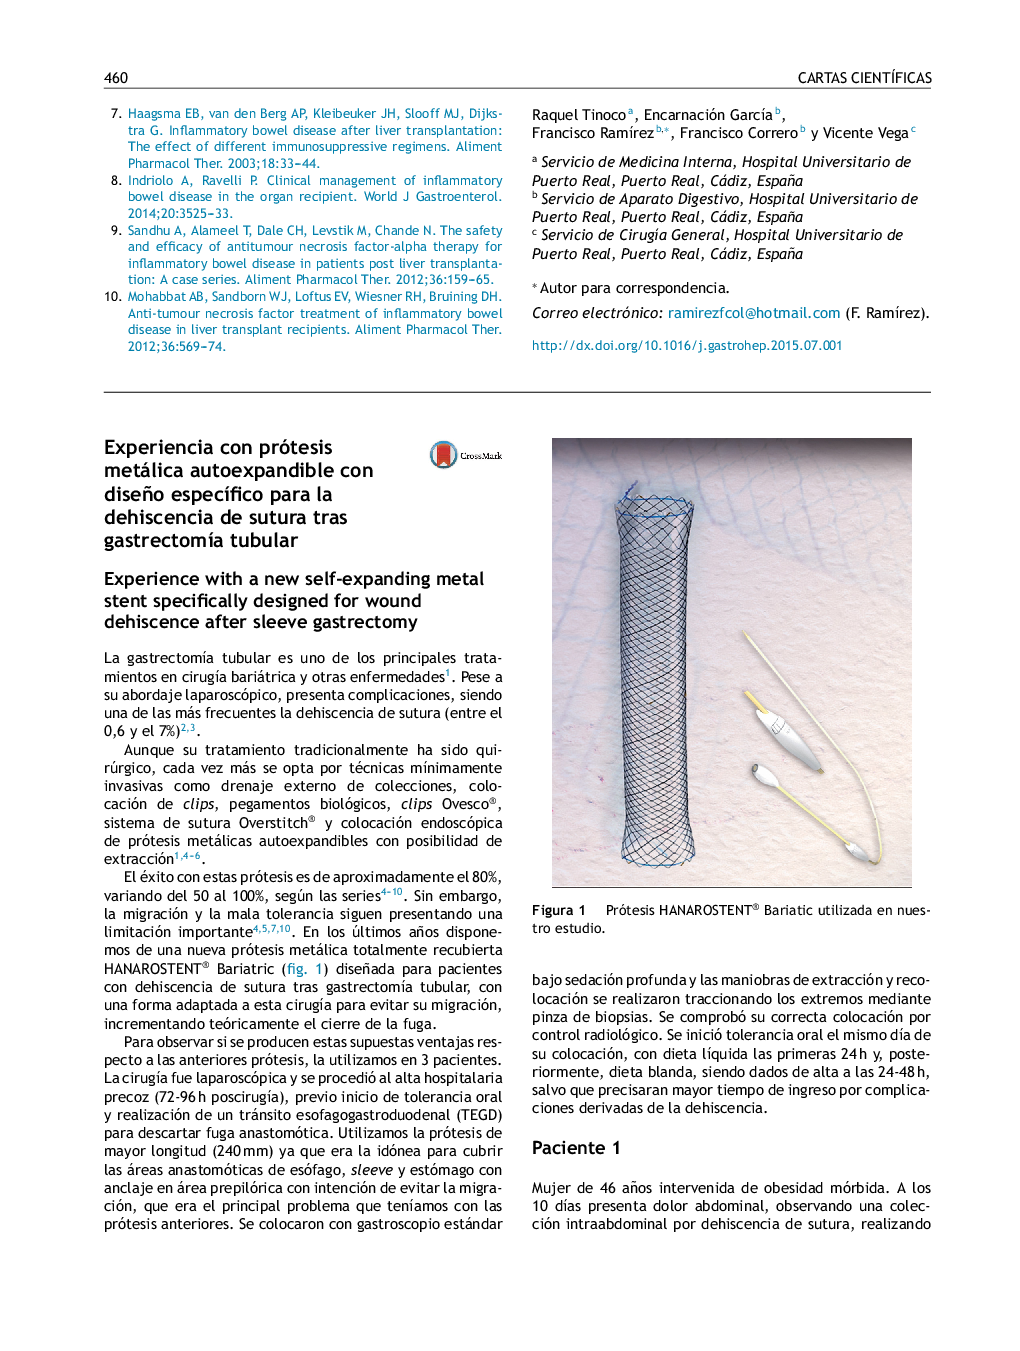 Experiencia con prótesis metálica autoexpandible con diseño especÃ­fico para la dehiscencia de sutura tras gastrectomÃ­a tubular